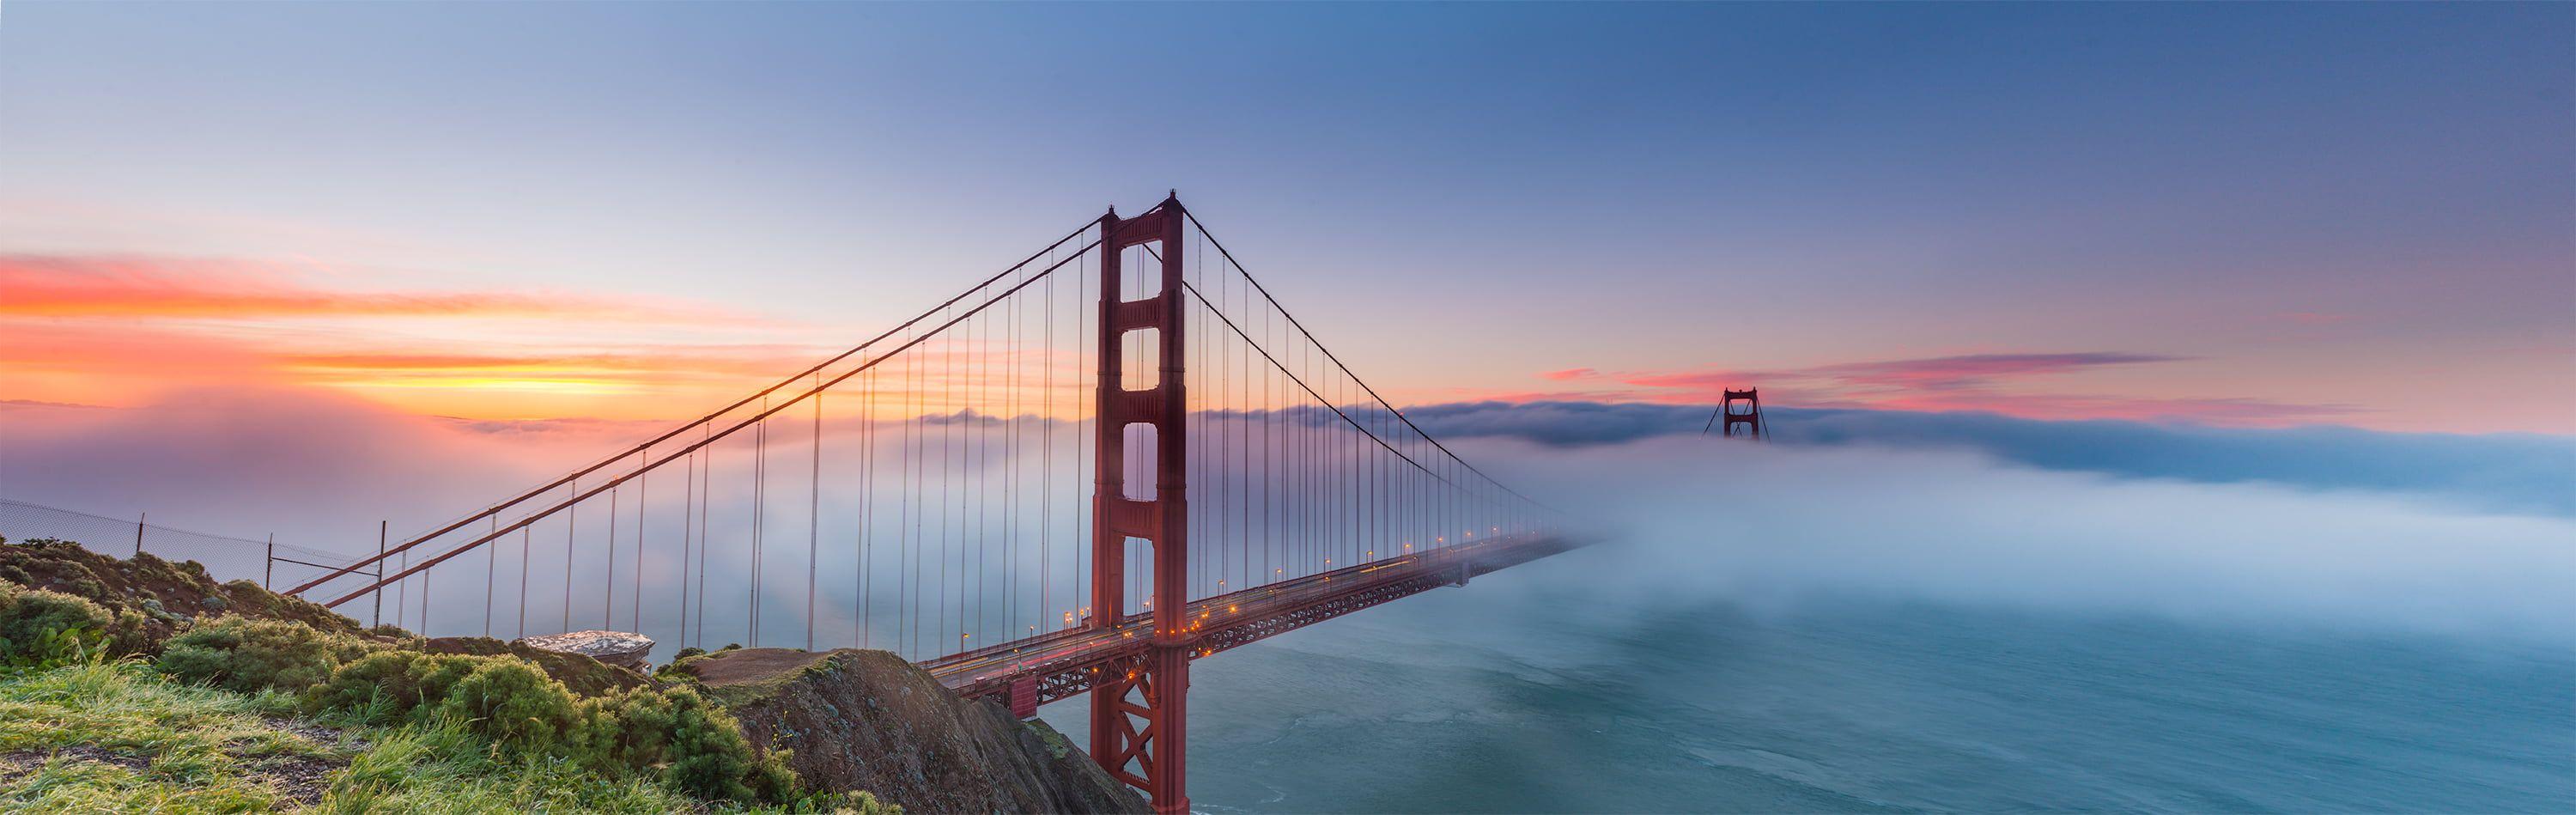 San Francisco Wallpapers - Top Những Hình Ảnh Đẹp